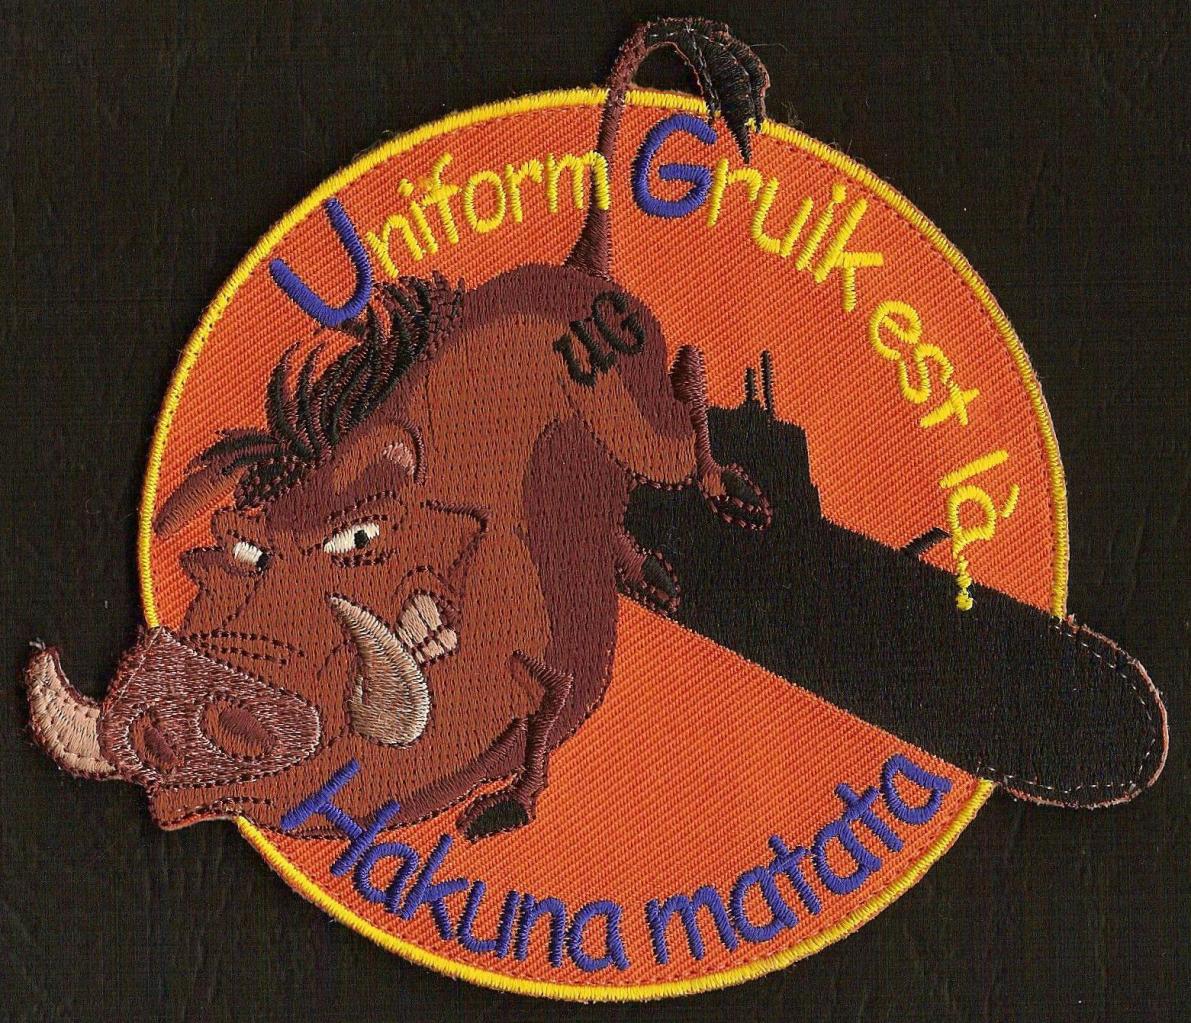 21 F - ATL 2 - UG - Uniform Gruik est là - Hakuna matata